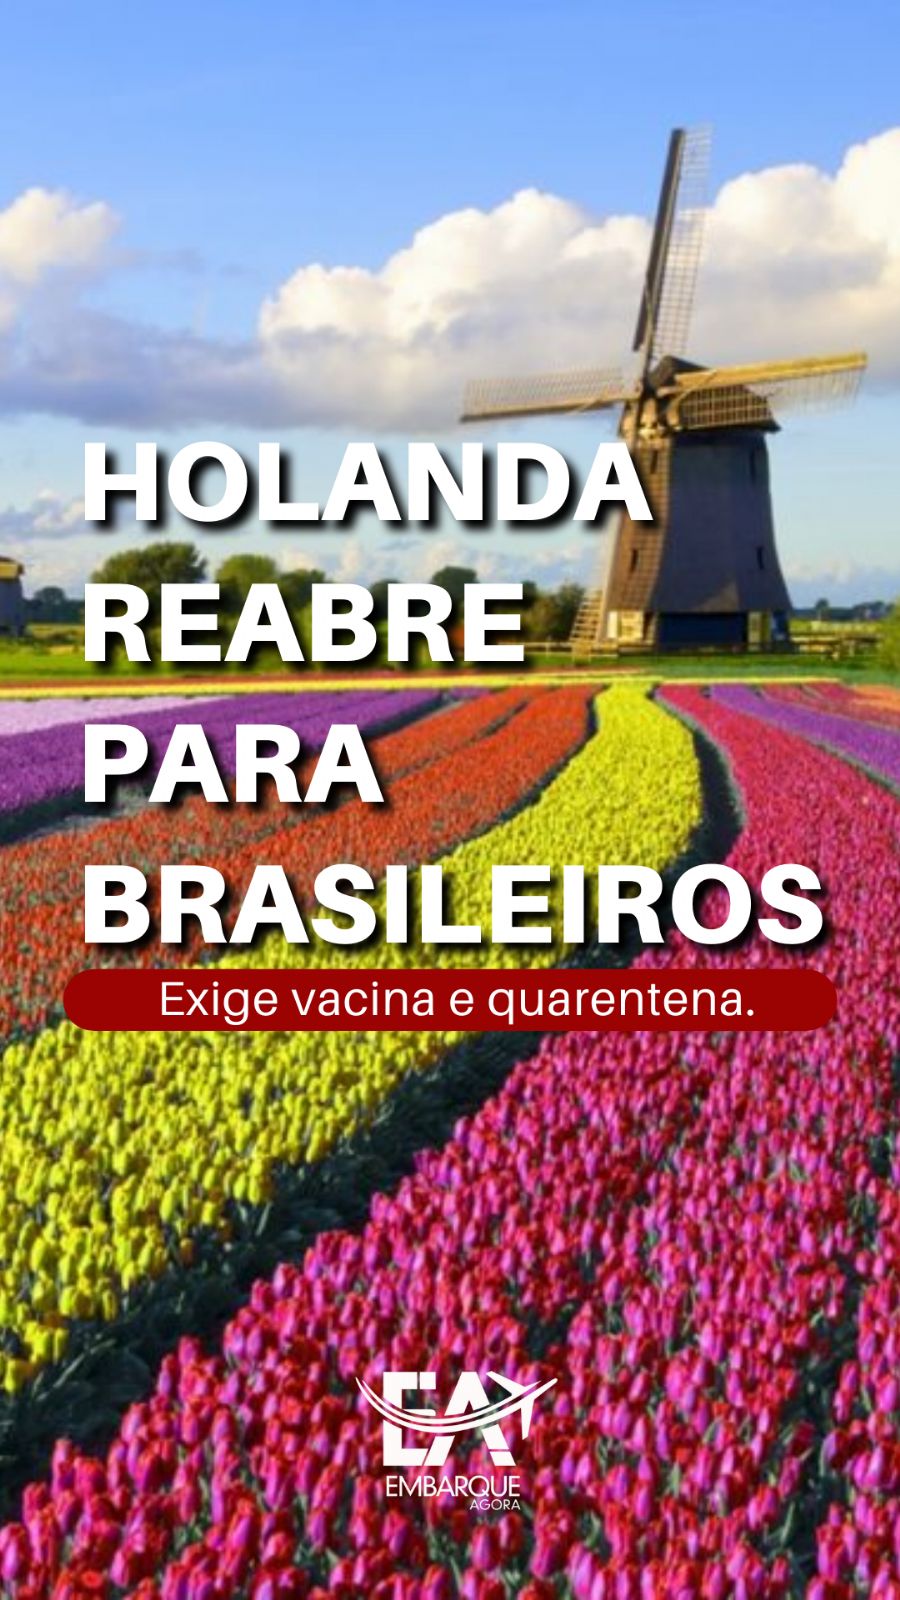 Holanda reabre para brasileiros vacinados, mas exige quarentena